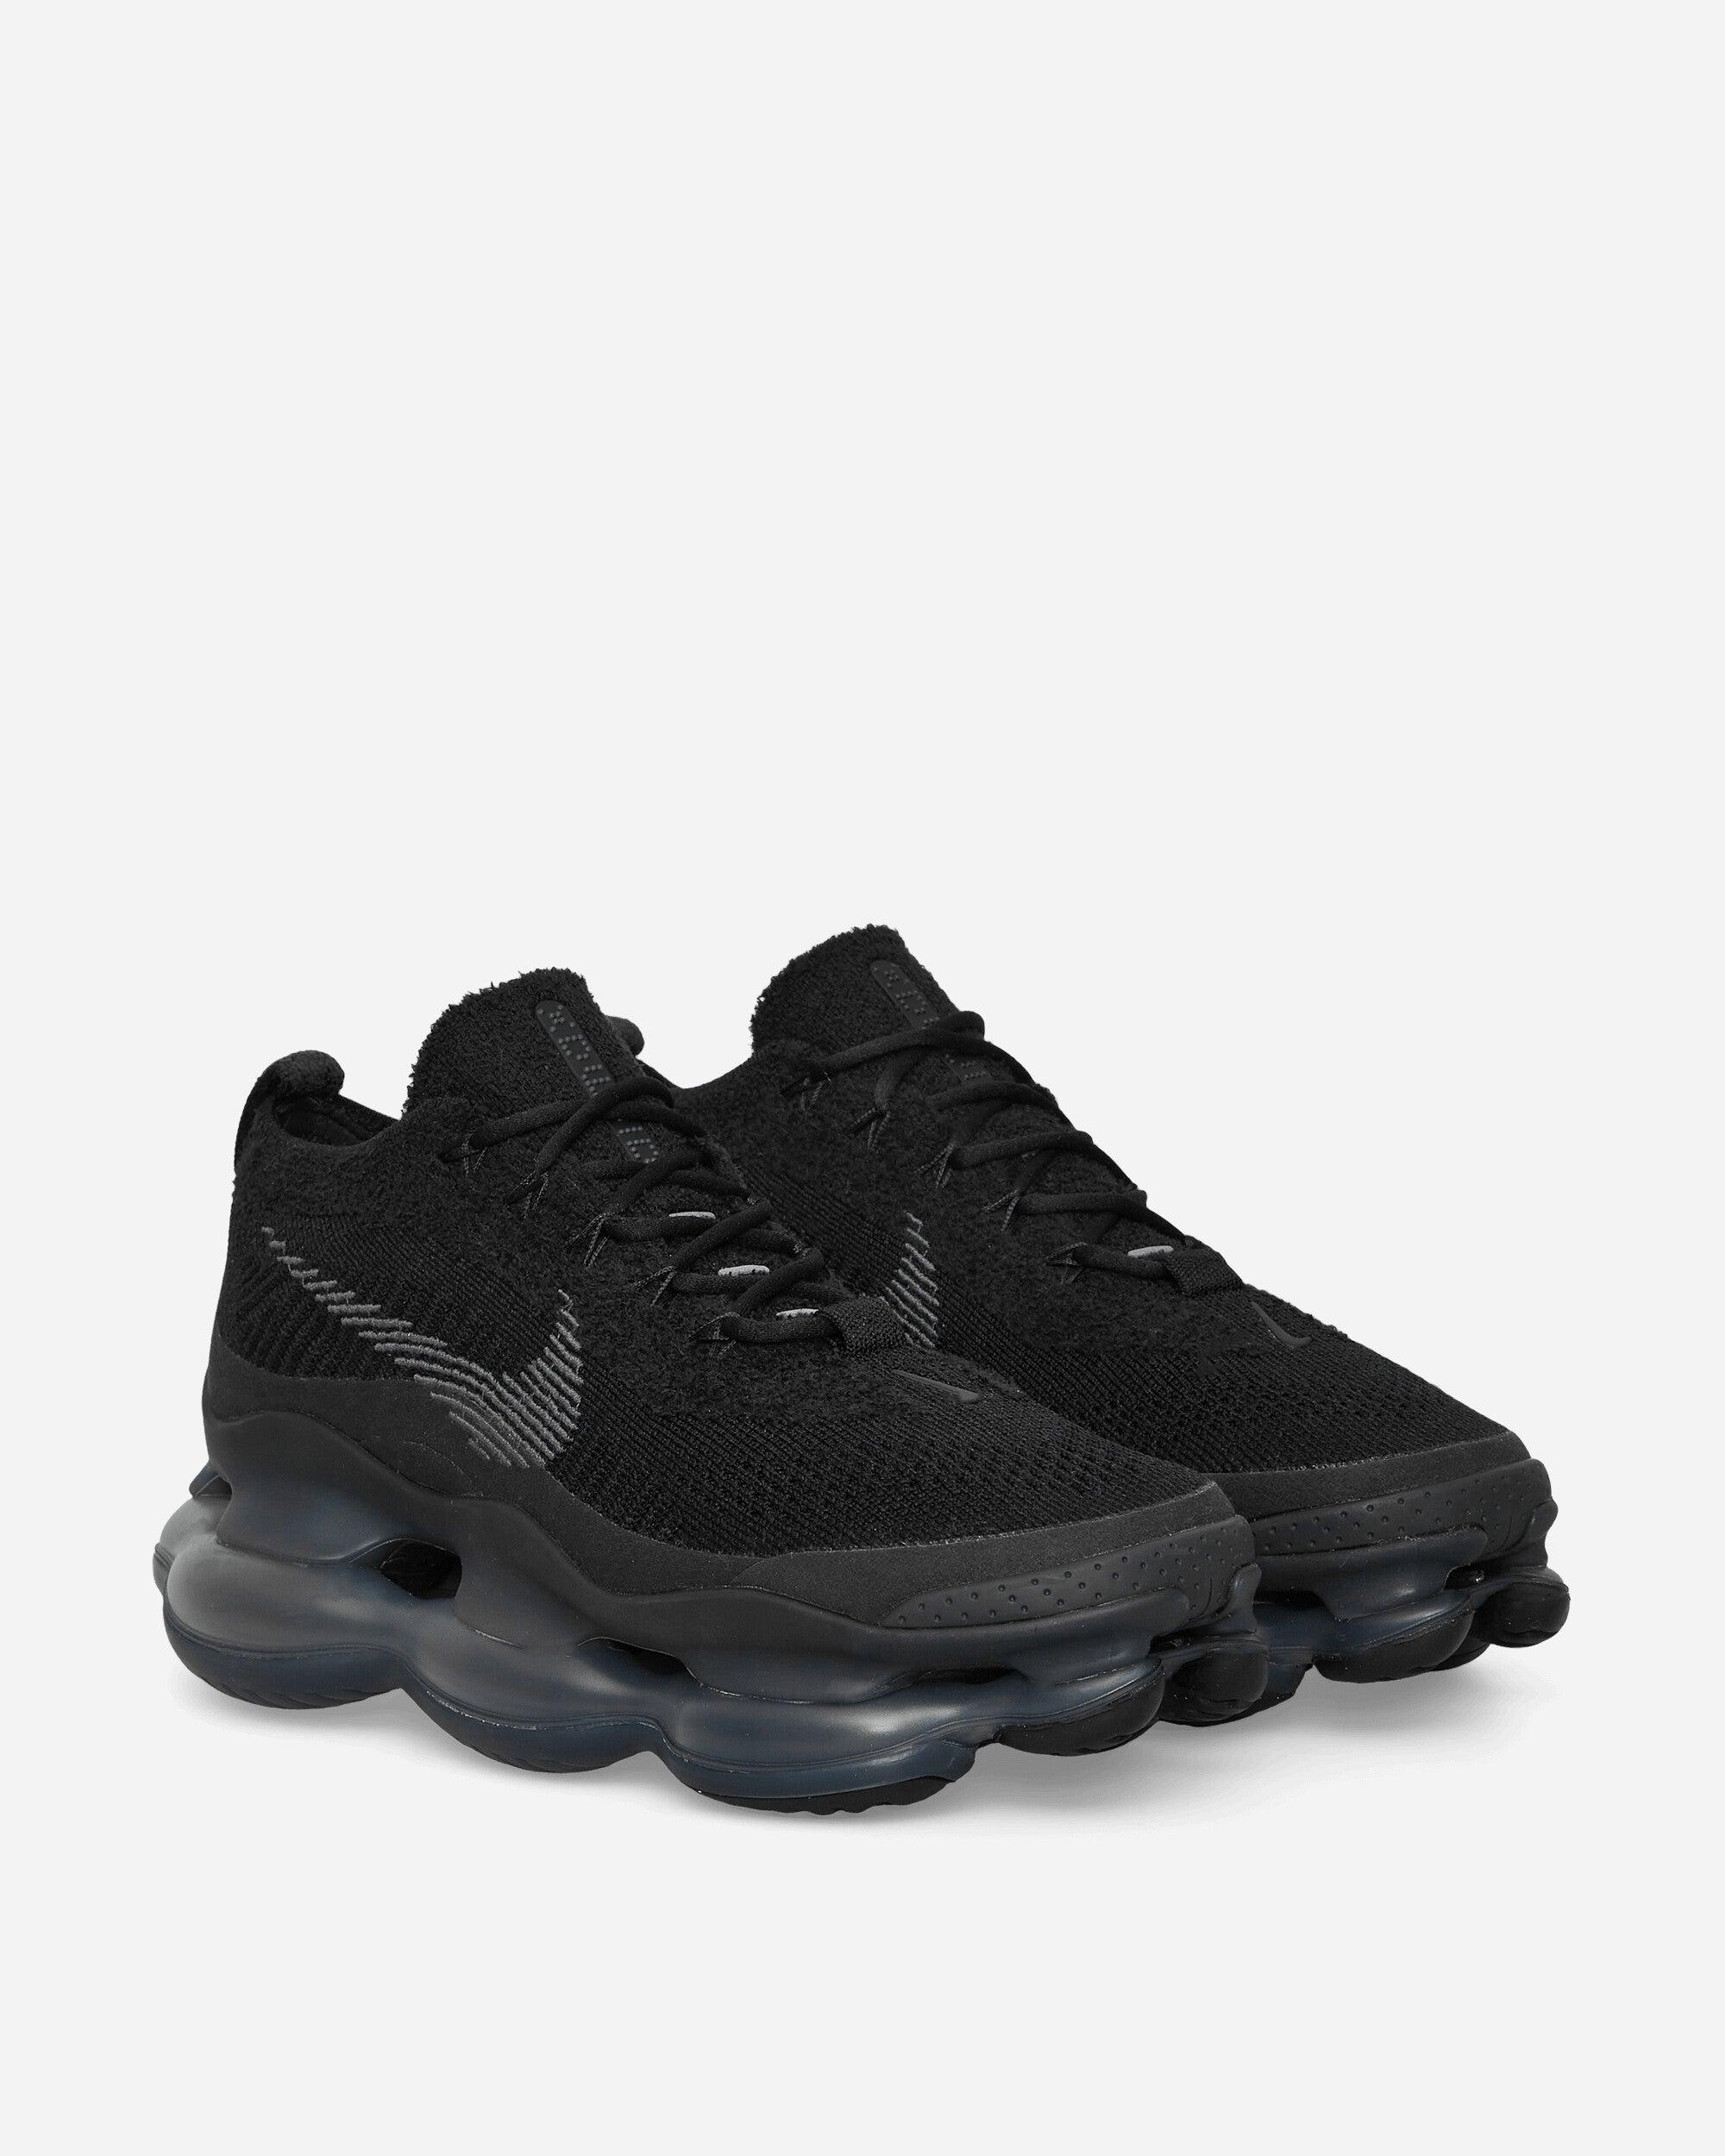 Nike Air Max Scorpion Sneakers Black for Men | Lyst